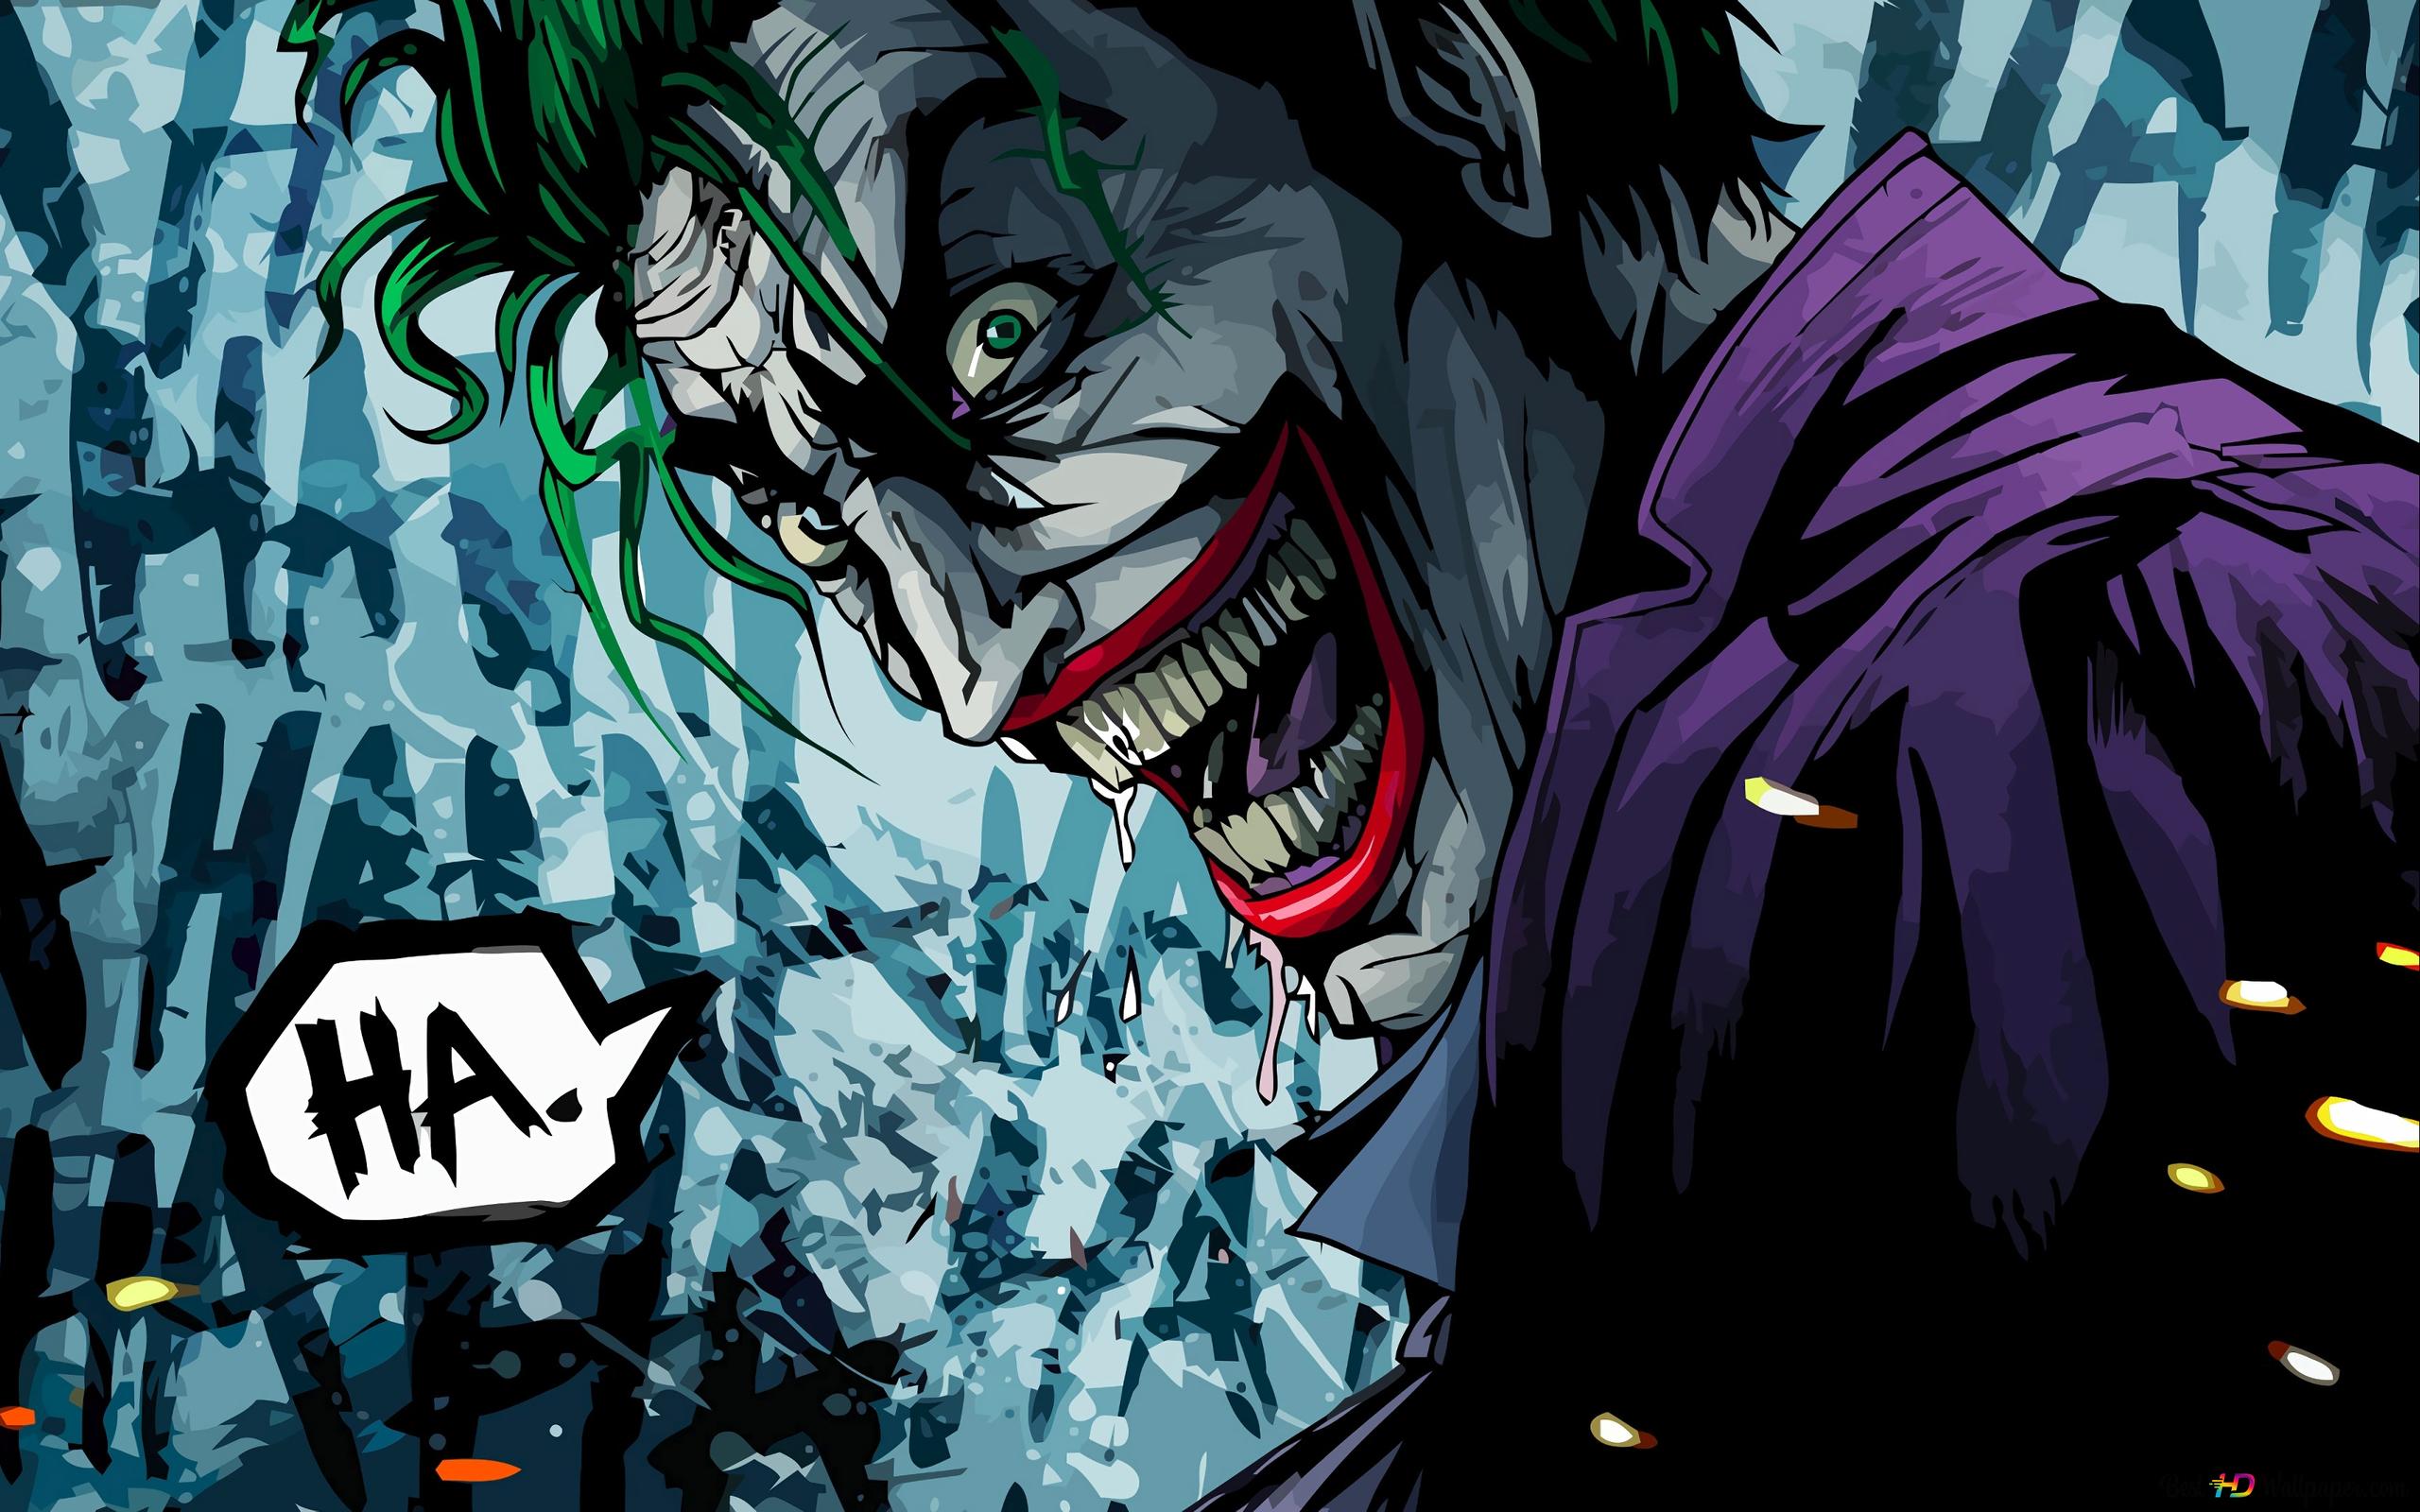 An Evil Joker Laugh Wallpapers